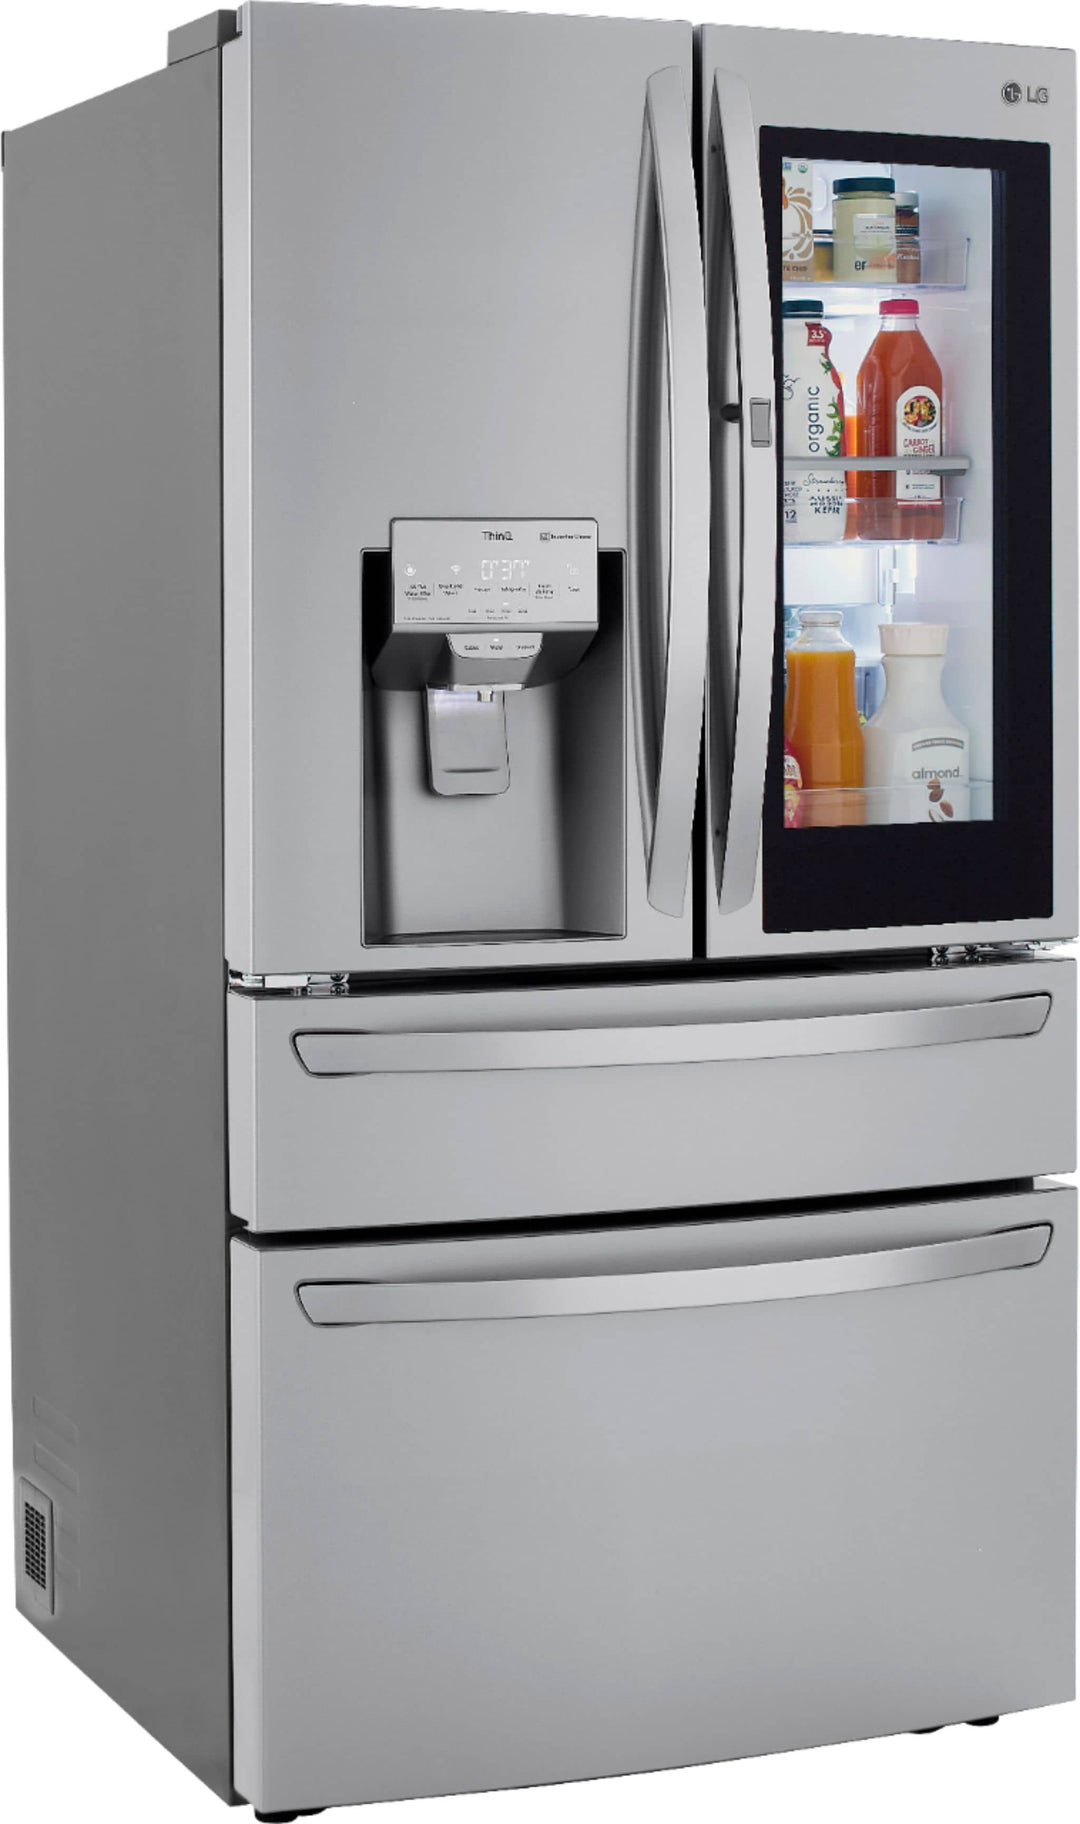 LG - 22.5 Cu. Ft. 4-Door French Door Counter-Depth Refrigerator with InstaView Door-in-Door and Craft Ice - Stainless steel_1